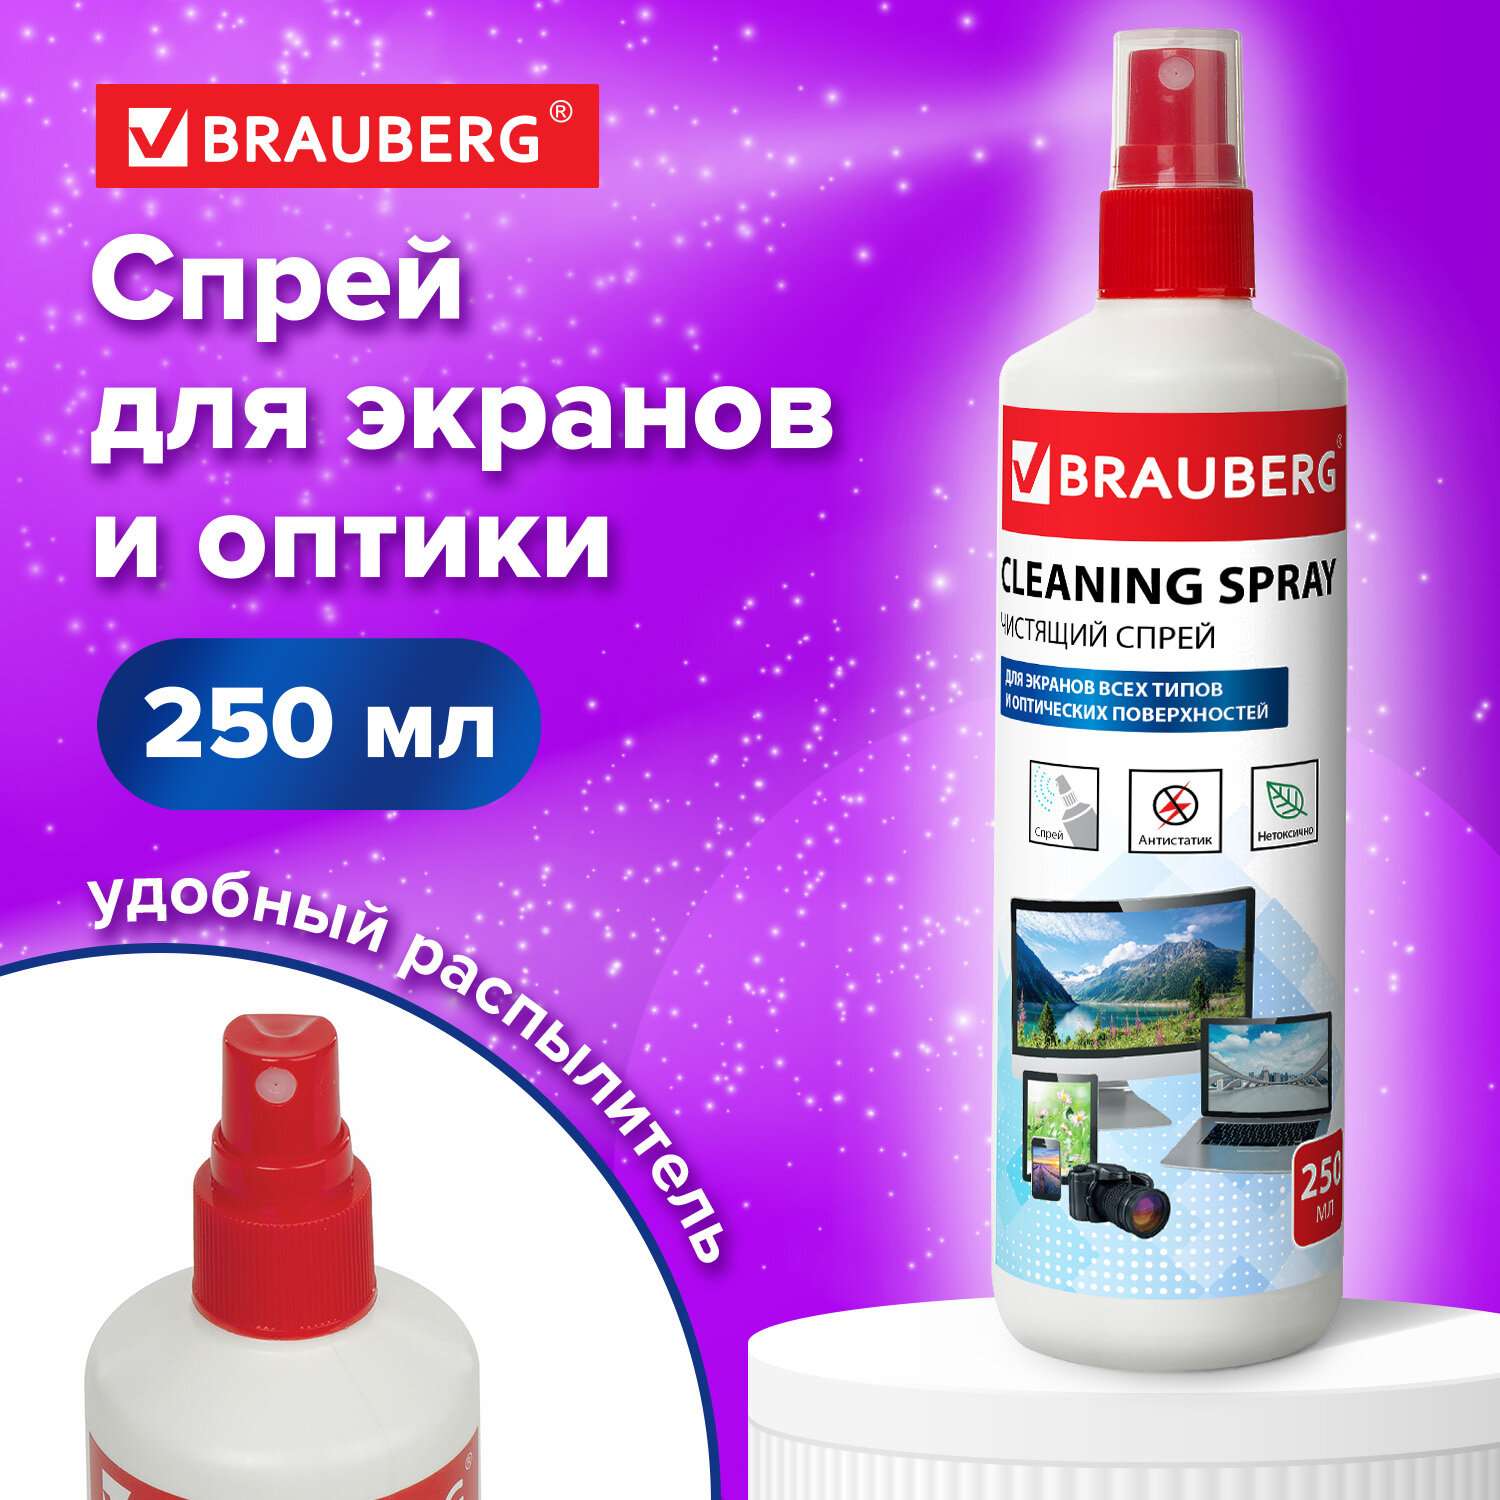 Чистящее средство Brauberg жидкость спрей для чистки мониторов и стекол 250 мл - фото 1